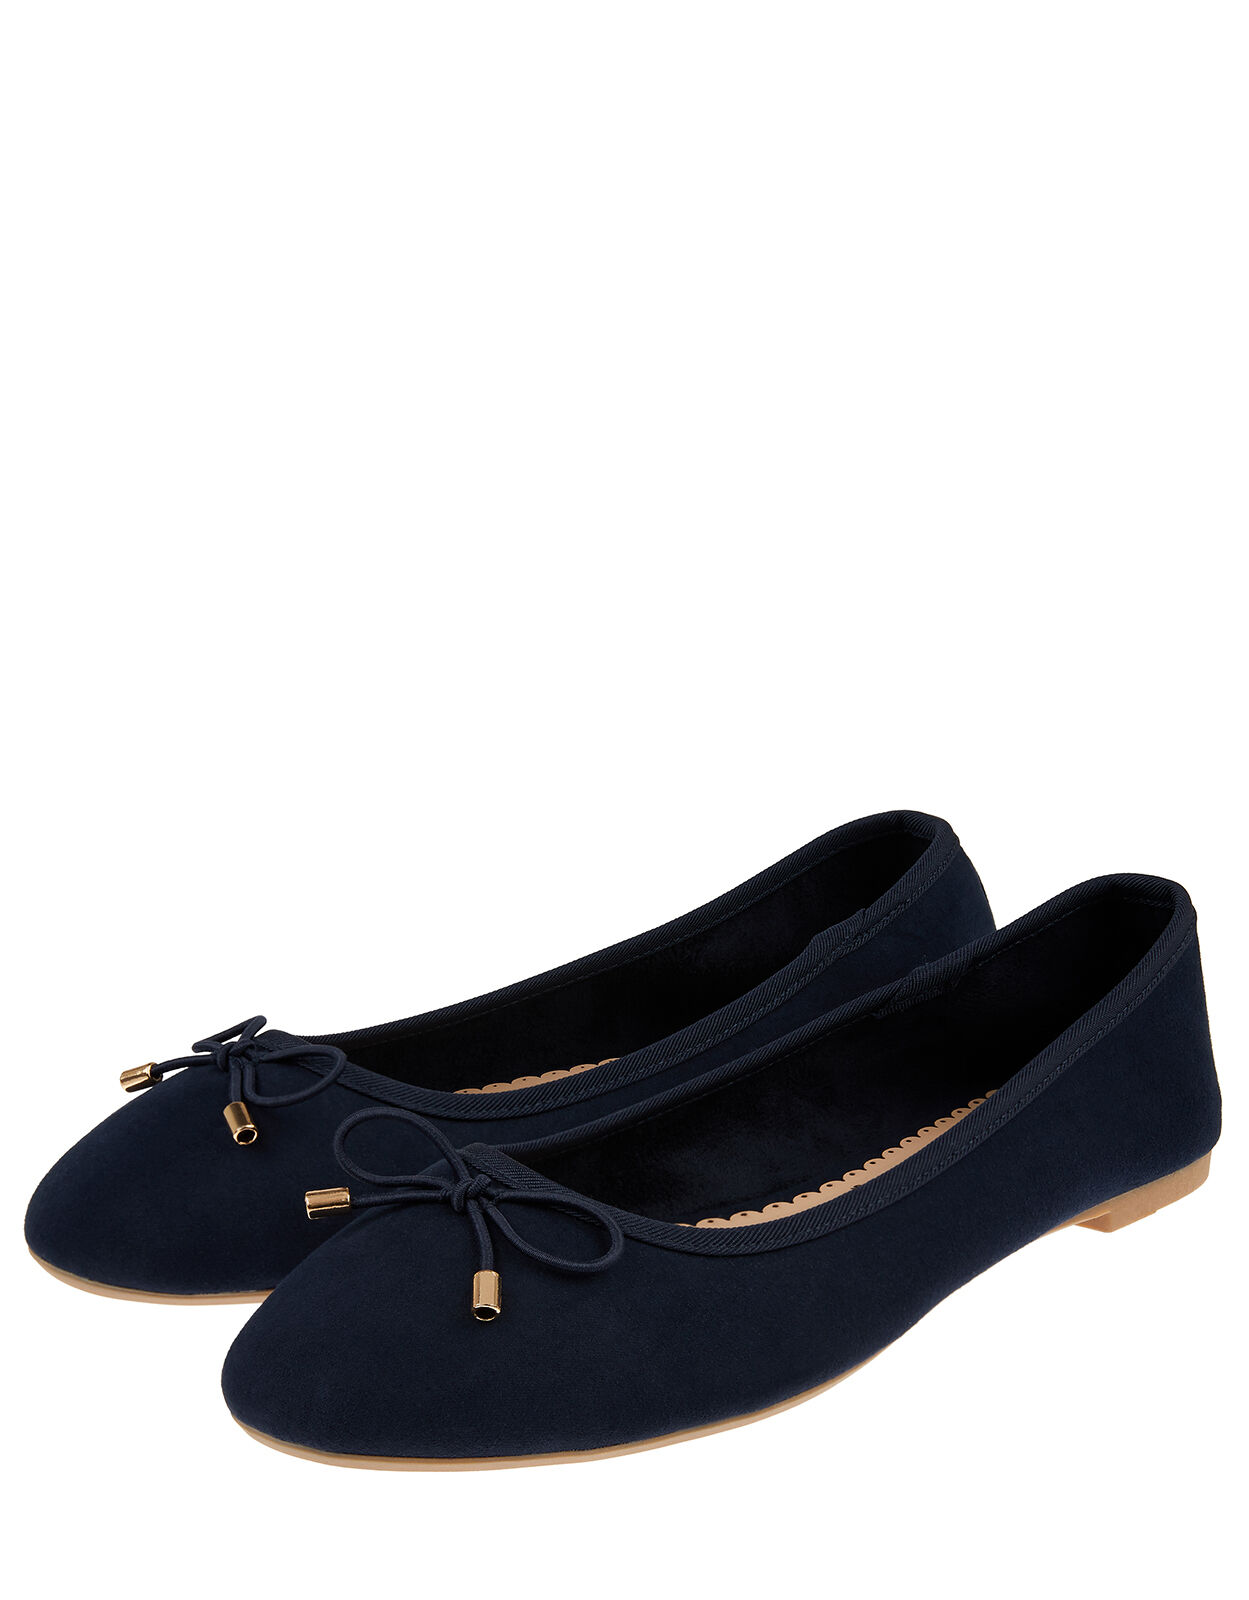 navy blue flat shoes uk